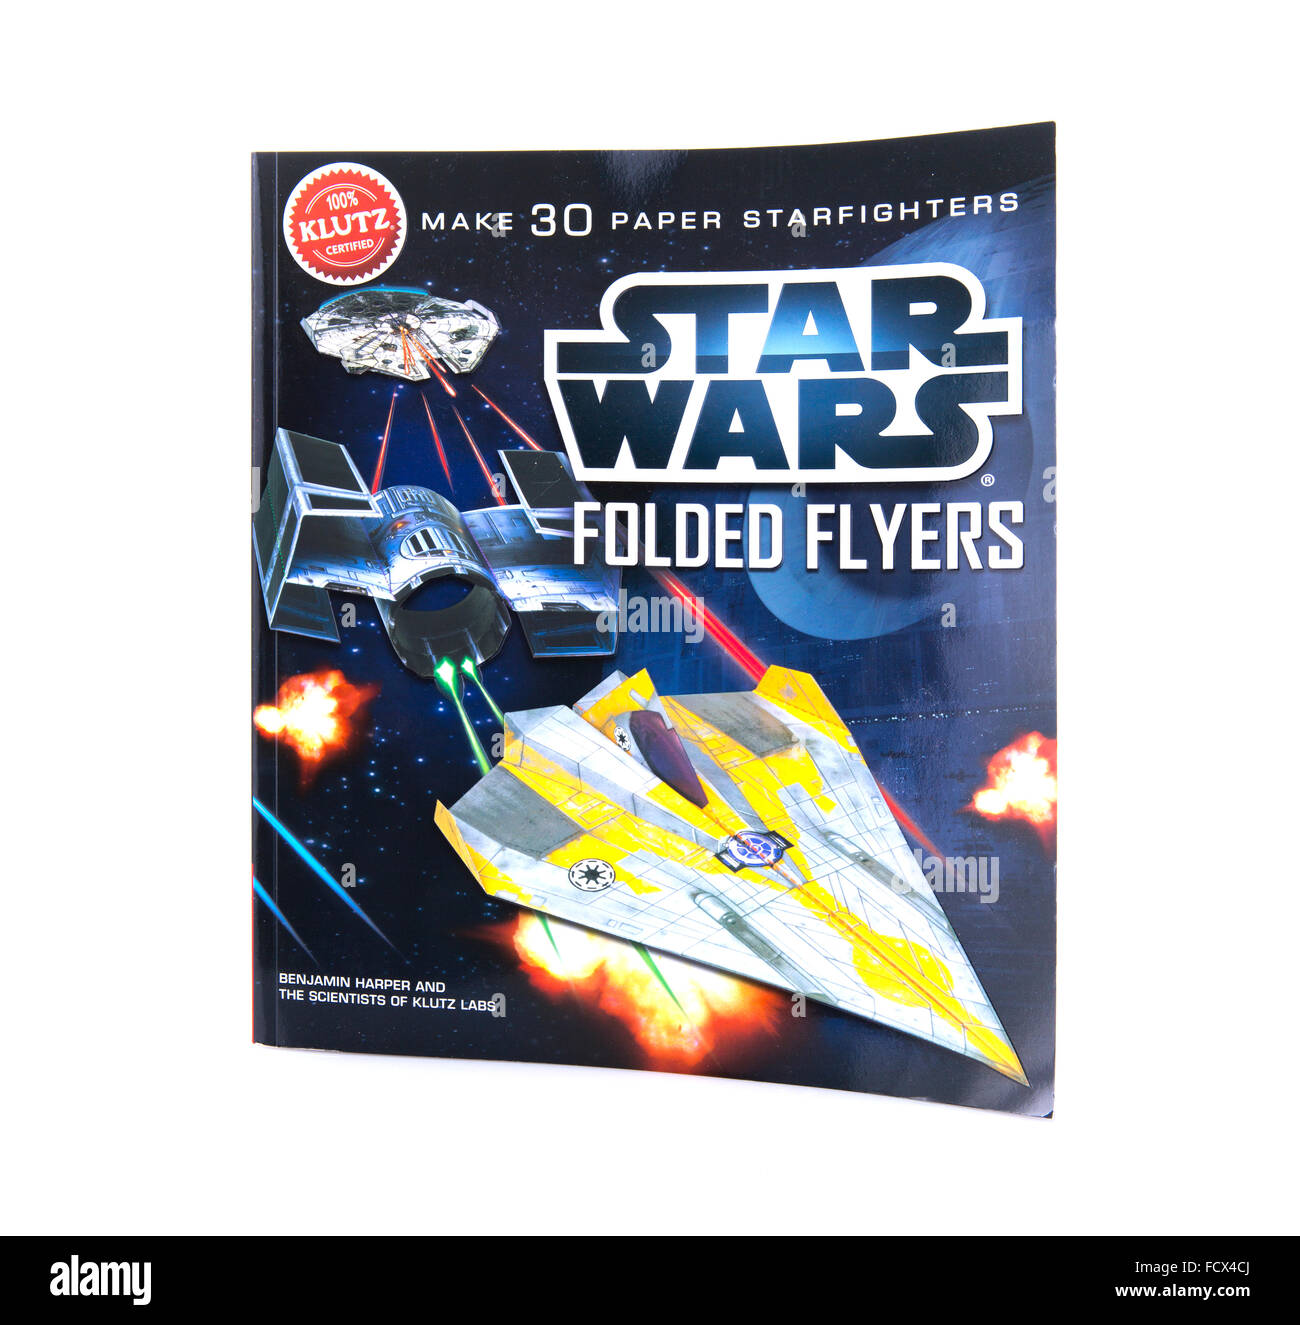 Star Wars gefaltet Flyer von Klutz Labs auf weißem Hintergrund Stockfoto